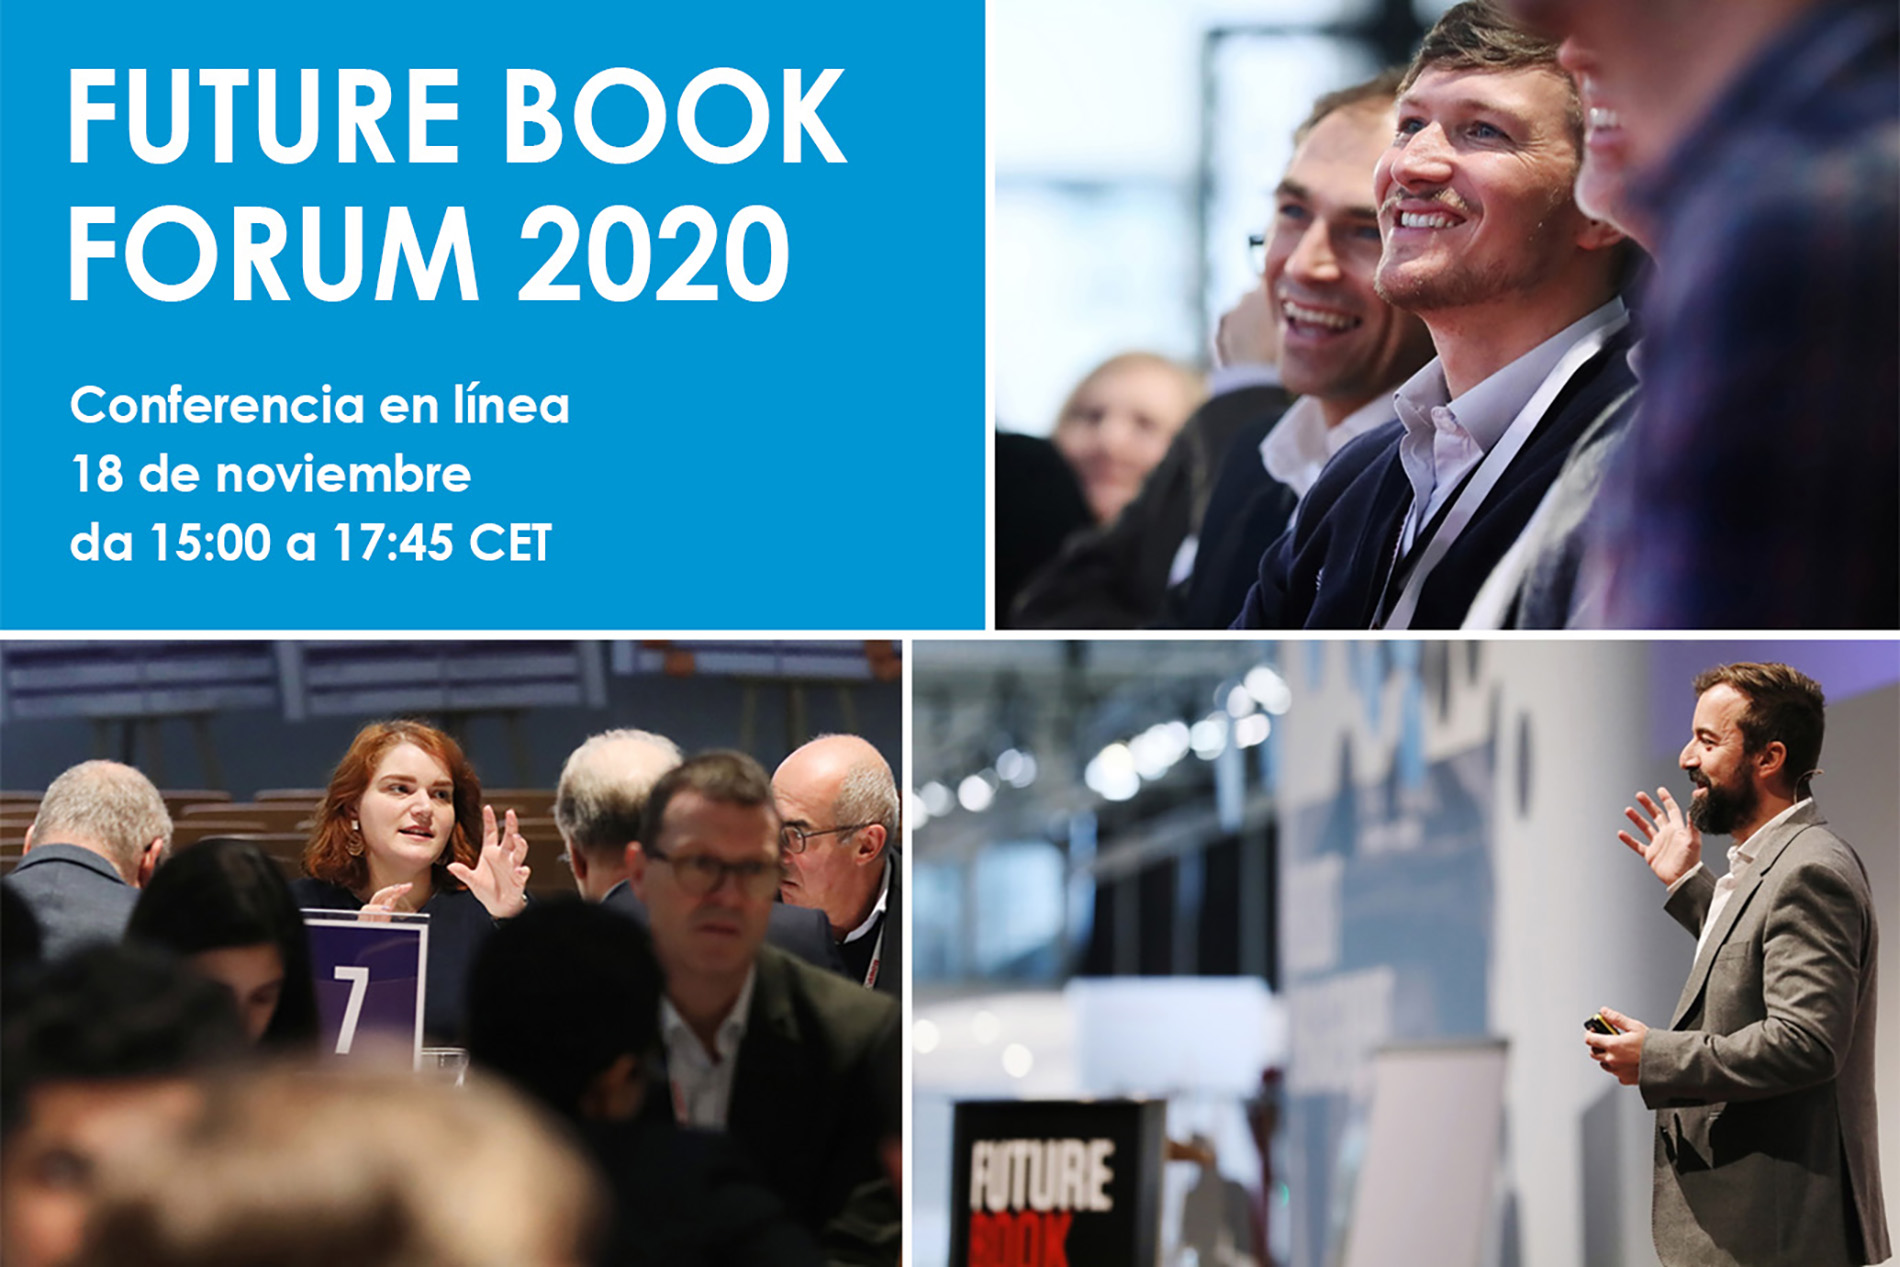 Future Book Forum 2020 - 18 de noviembre de 2020